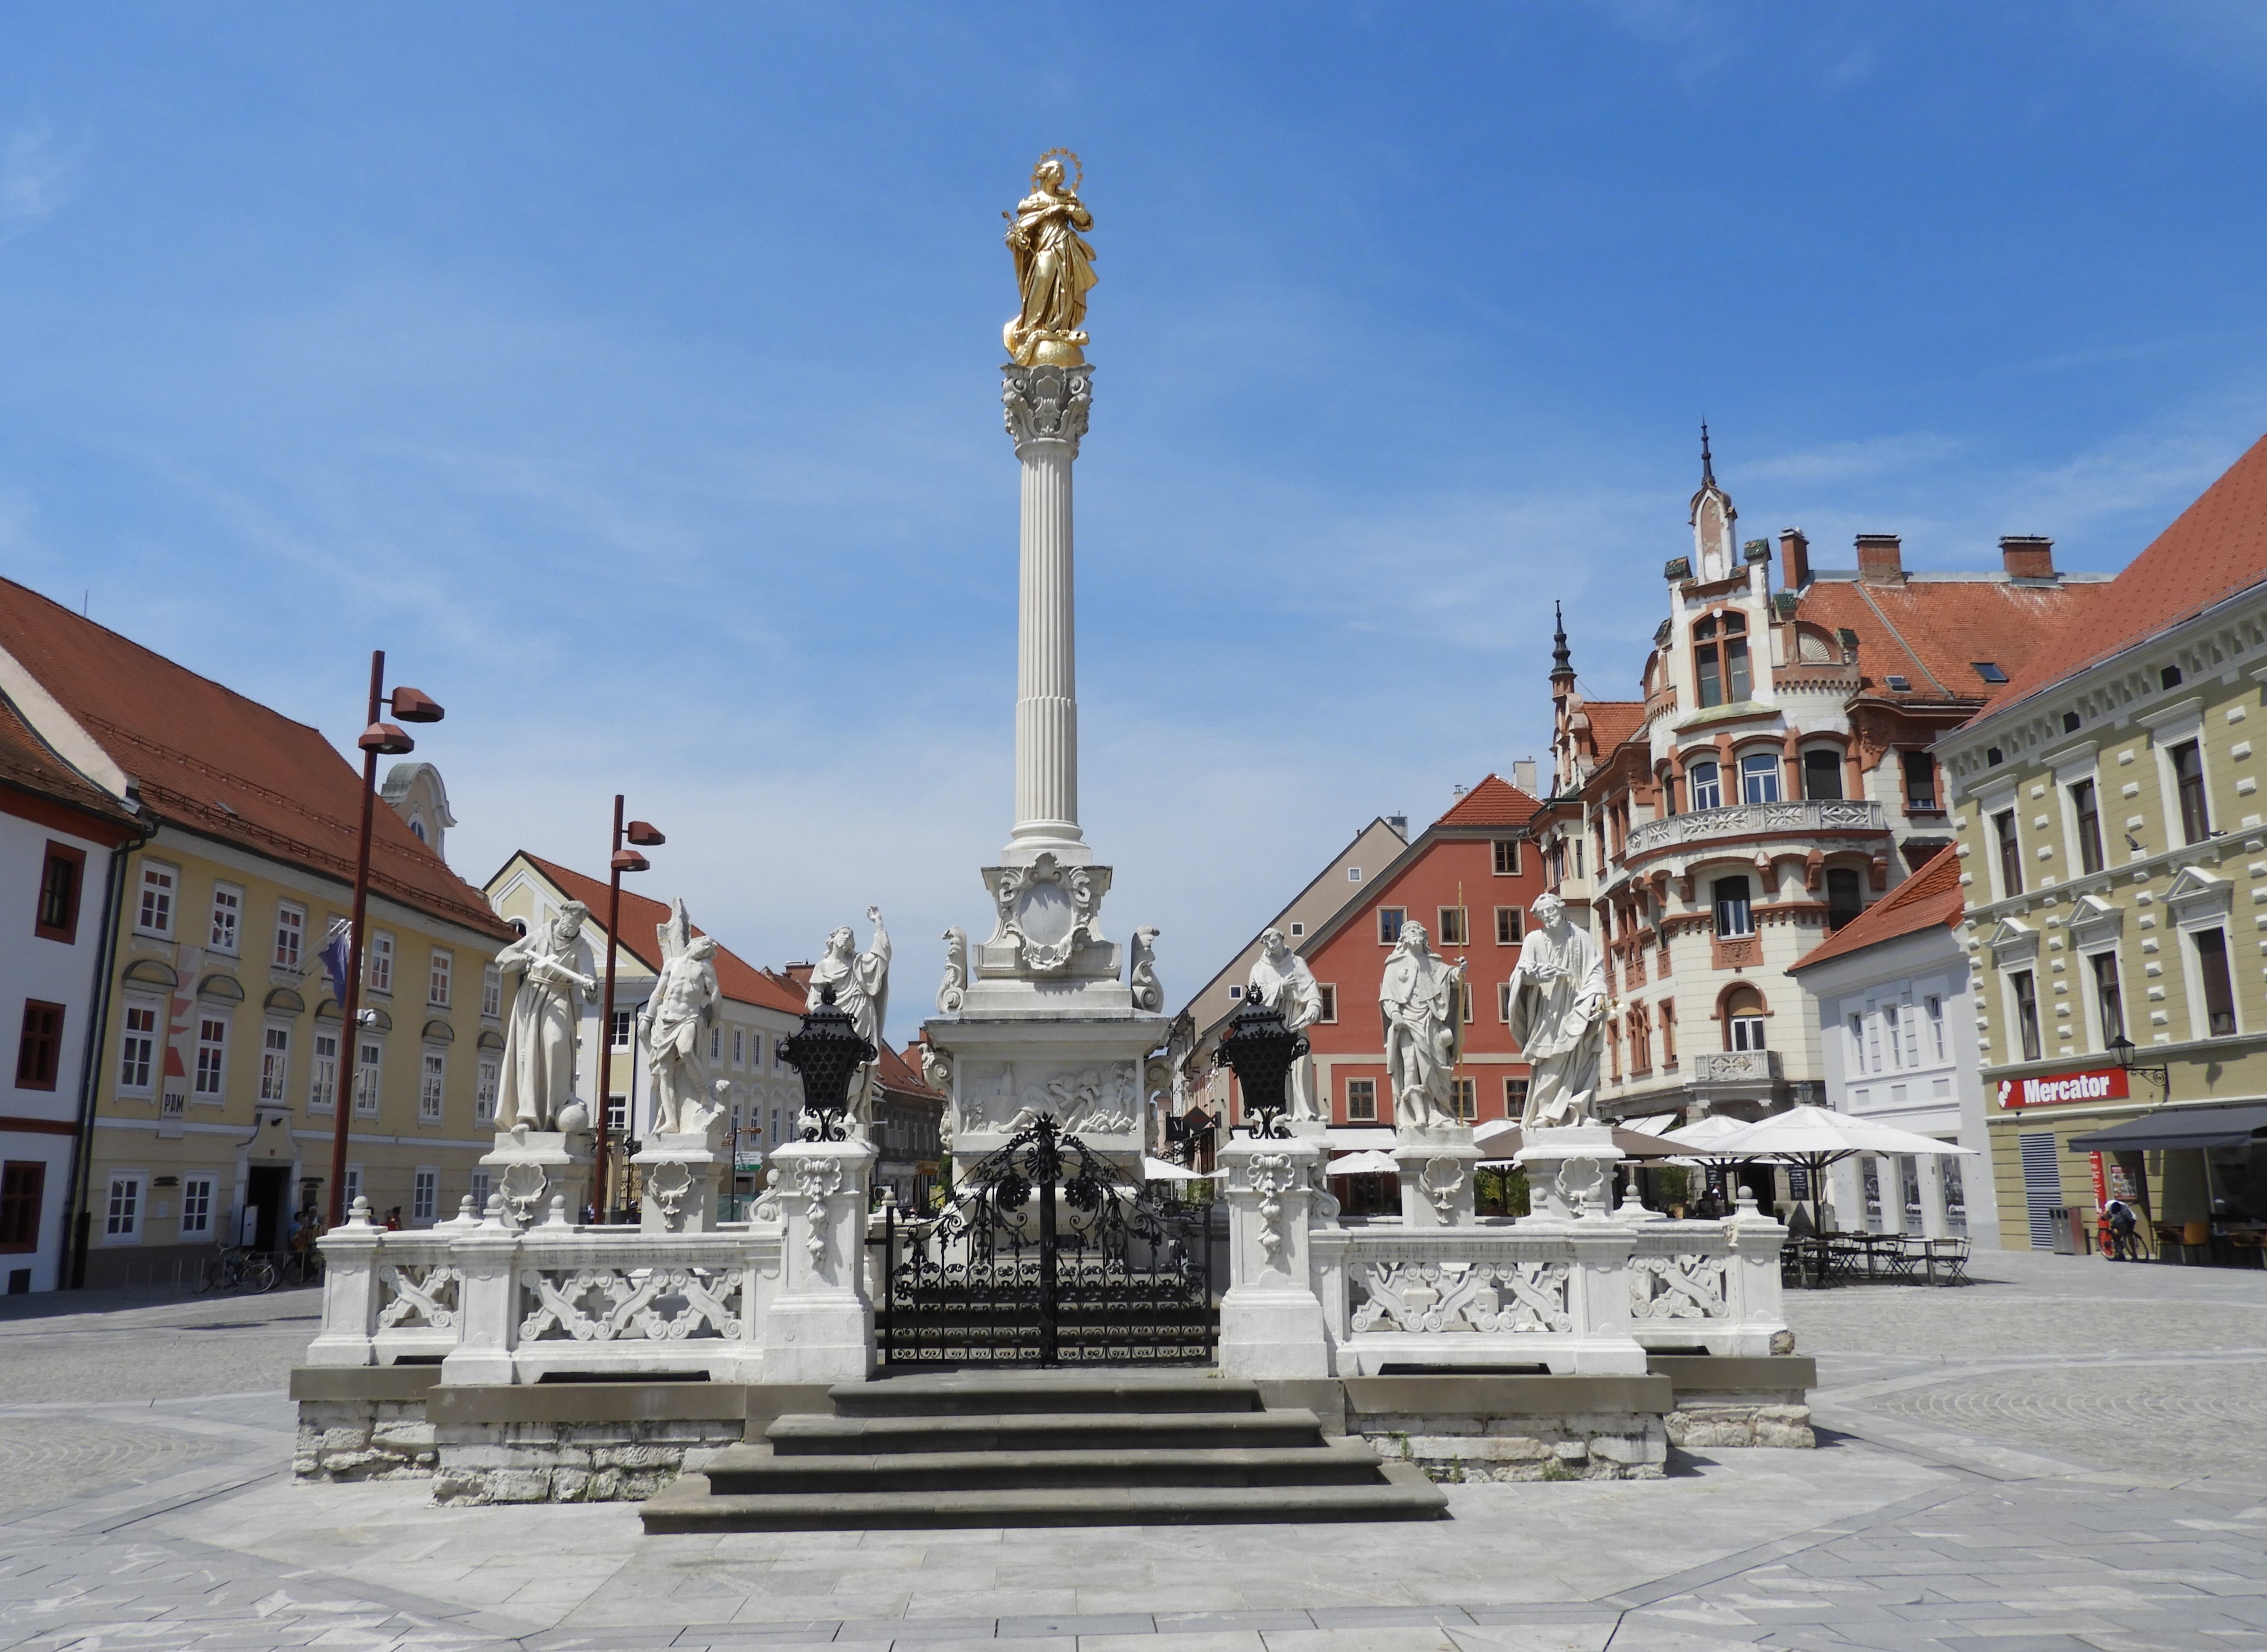 1217 - 10 - Piazza Glavni Trg a Maribor - Slovenia